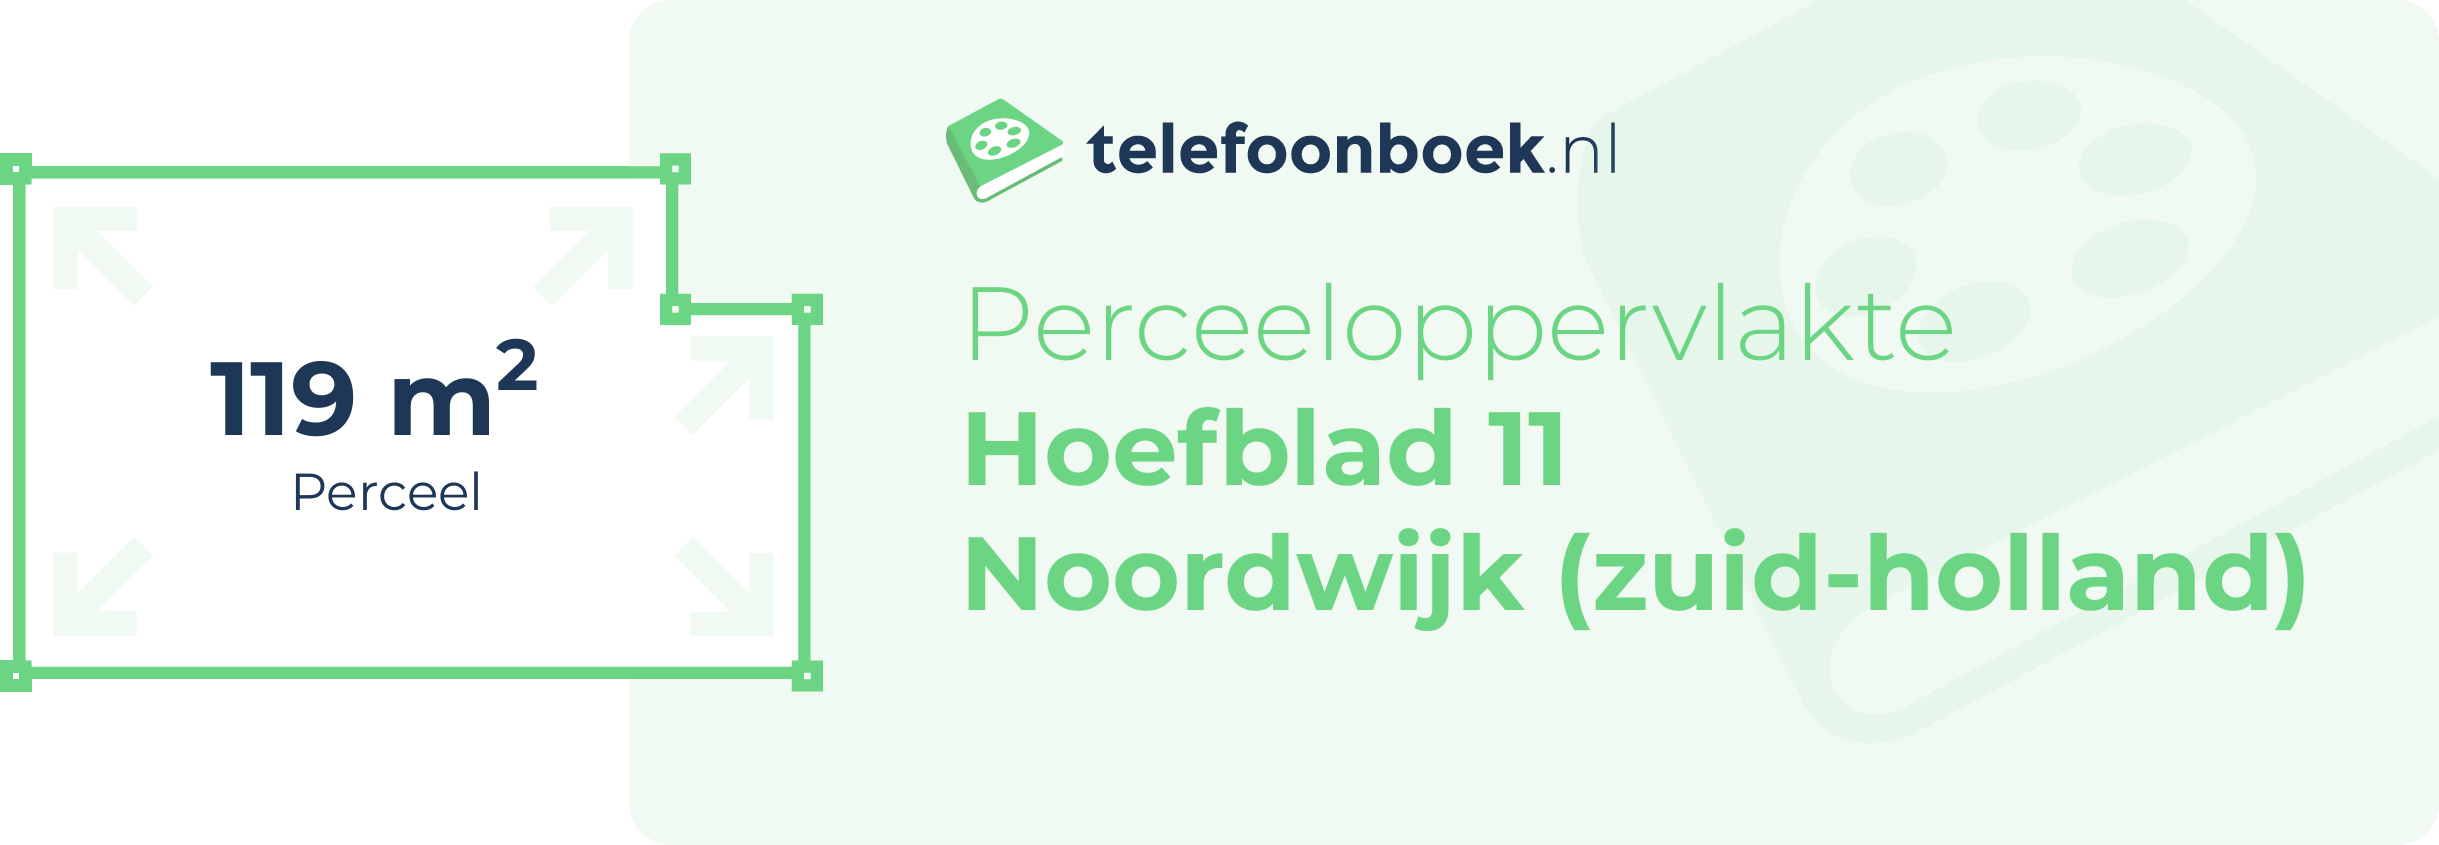 Perceeloppervlakte Hoefblad 11 Noordwijk (Zuid-Holland)